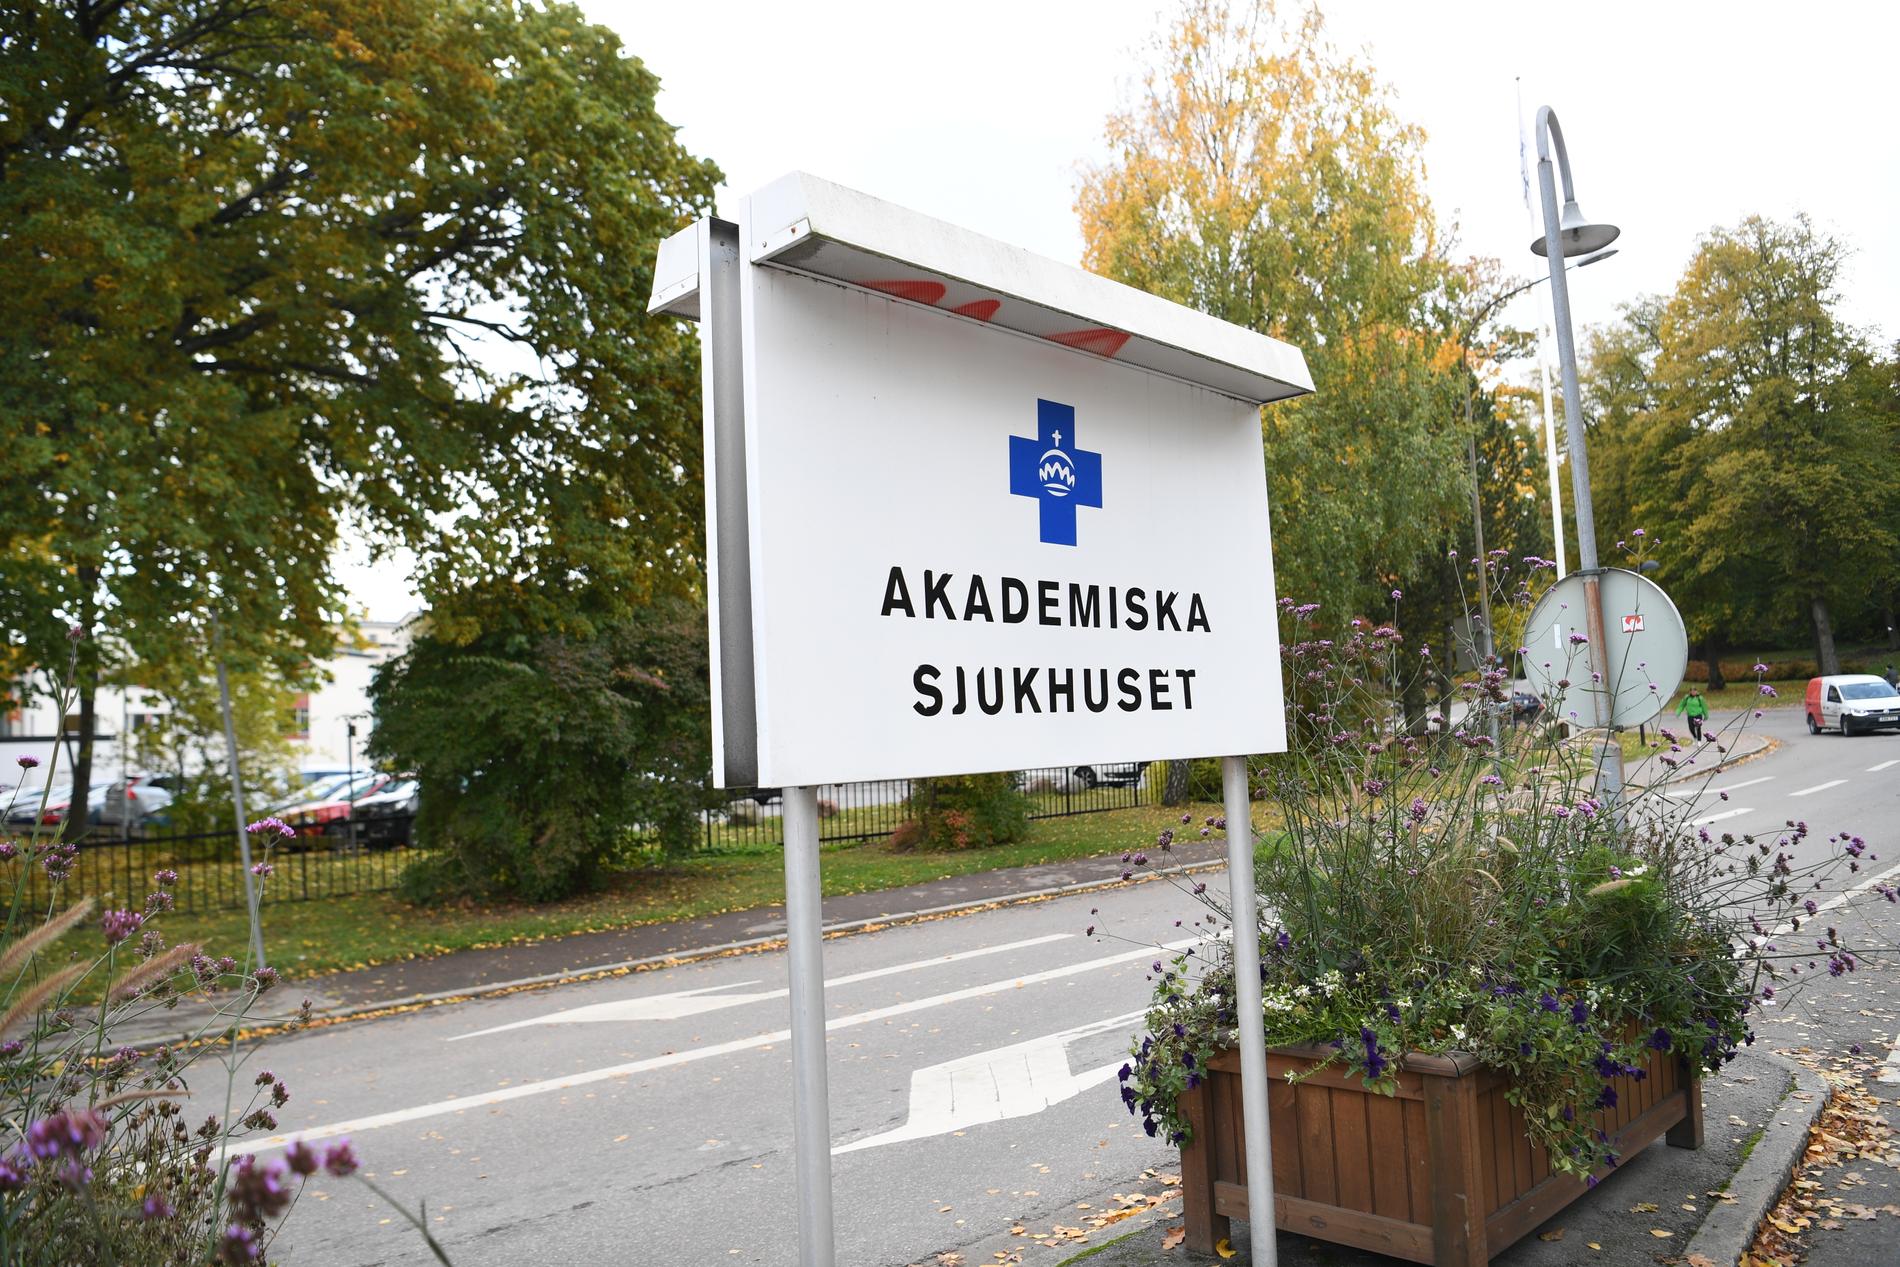 Situationen på Akademiska sjukhuset i Uppsala beskrivs som mycket ansträngd. Arkivbild.